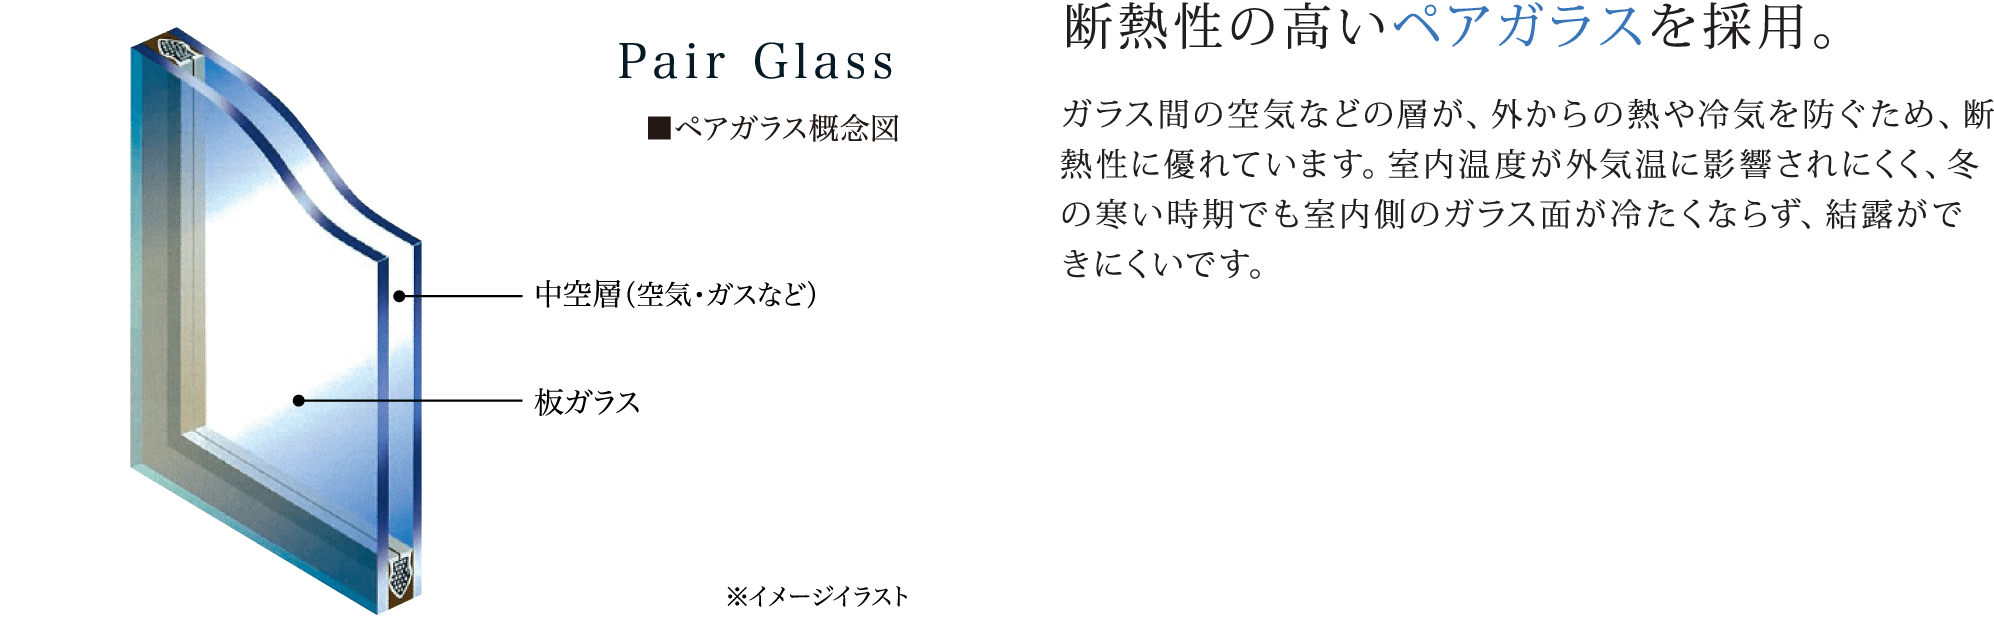 ペアガラス概念図 断熱性の高いペアガラスを採用。 ガラス間の空気などの層が、外からの熱や冷気を防ぐため、断熱性に優れています。室内温度が外気温に影響されにくく、冬の寒い時期でも室内側のガラス面が冷たくならず、結露ができにくいです。